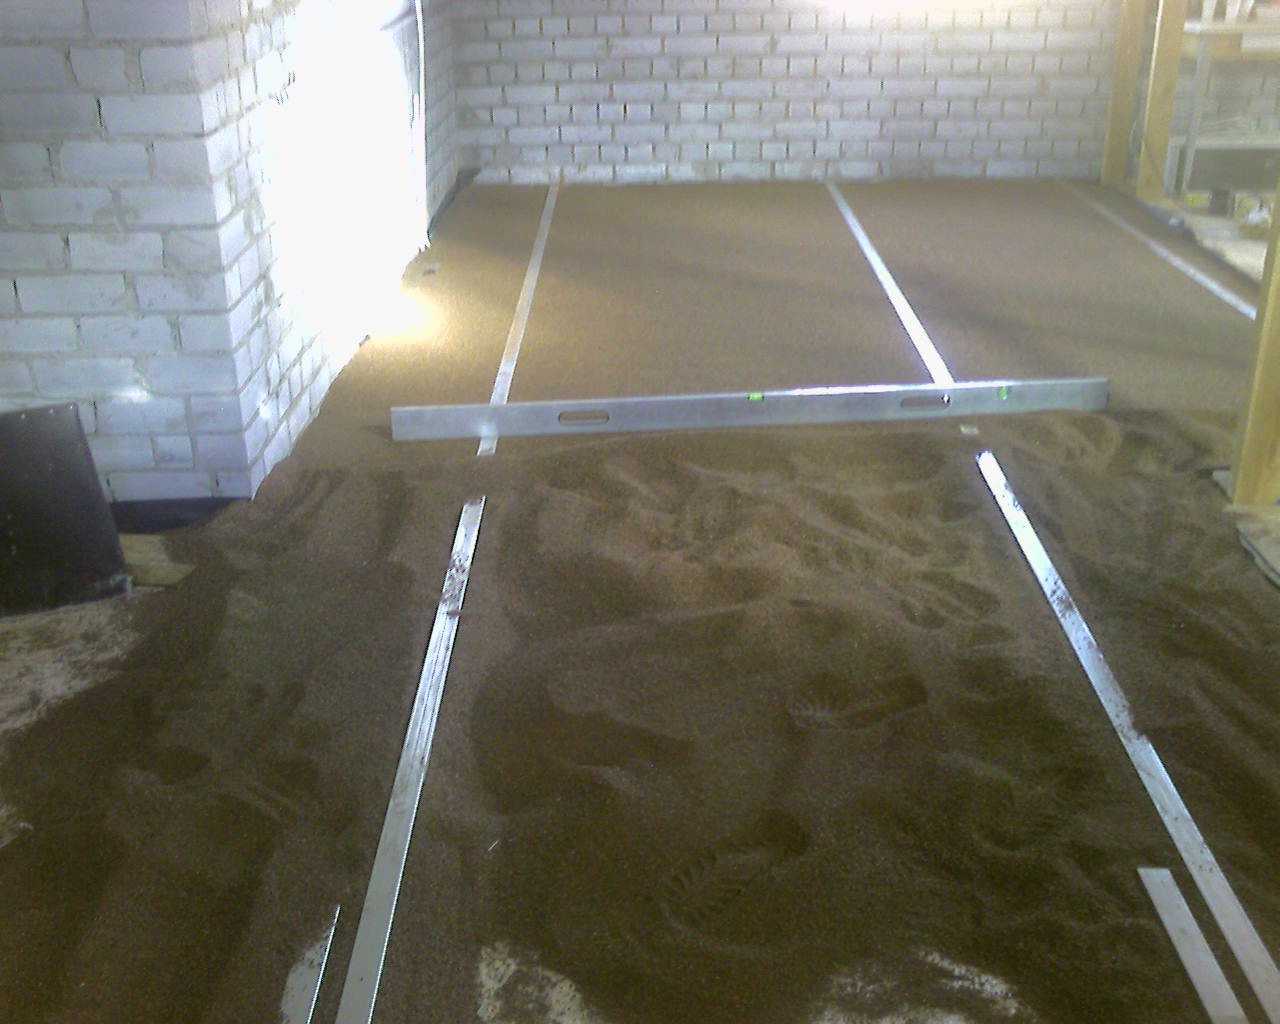 Делаем плавающую бетонную стяжку под плитку на деревянный пол